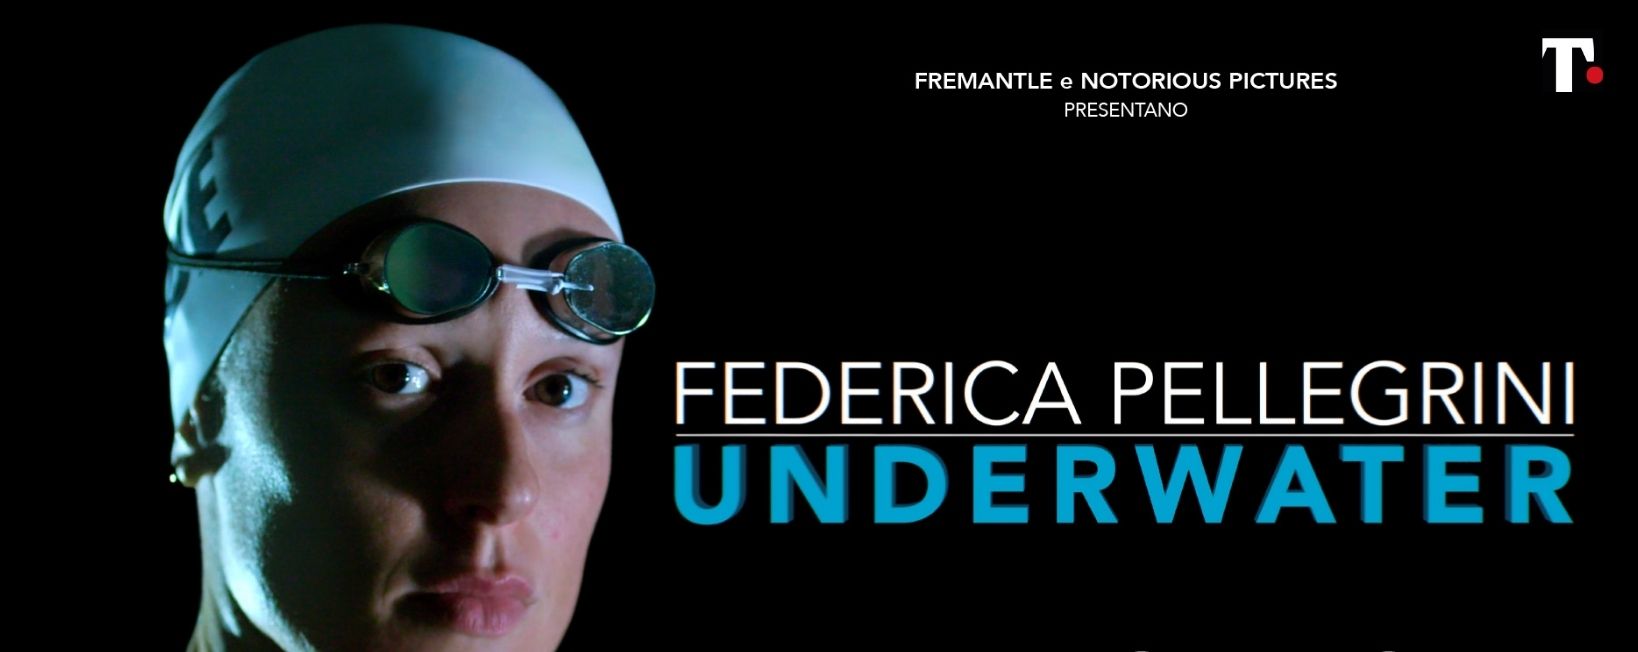 Underwater film su Federica Pellegrini dove e quando vederlo